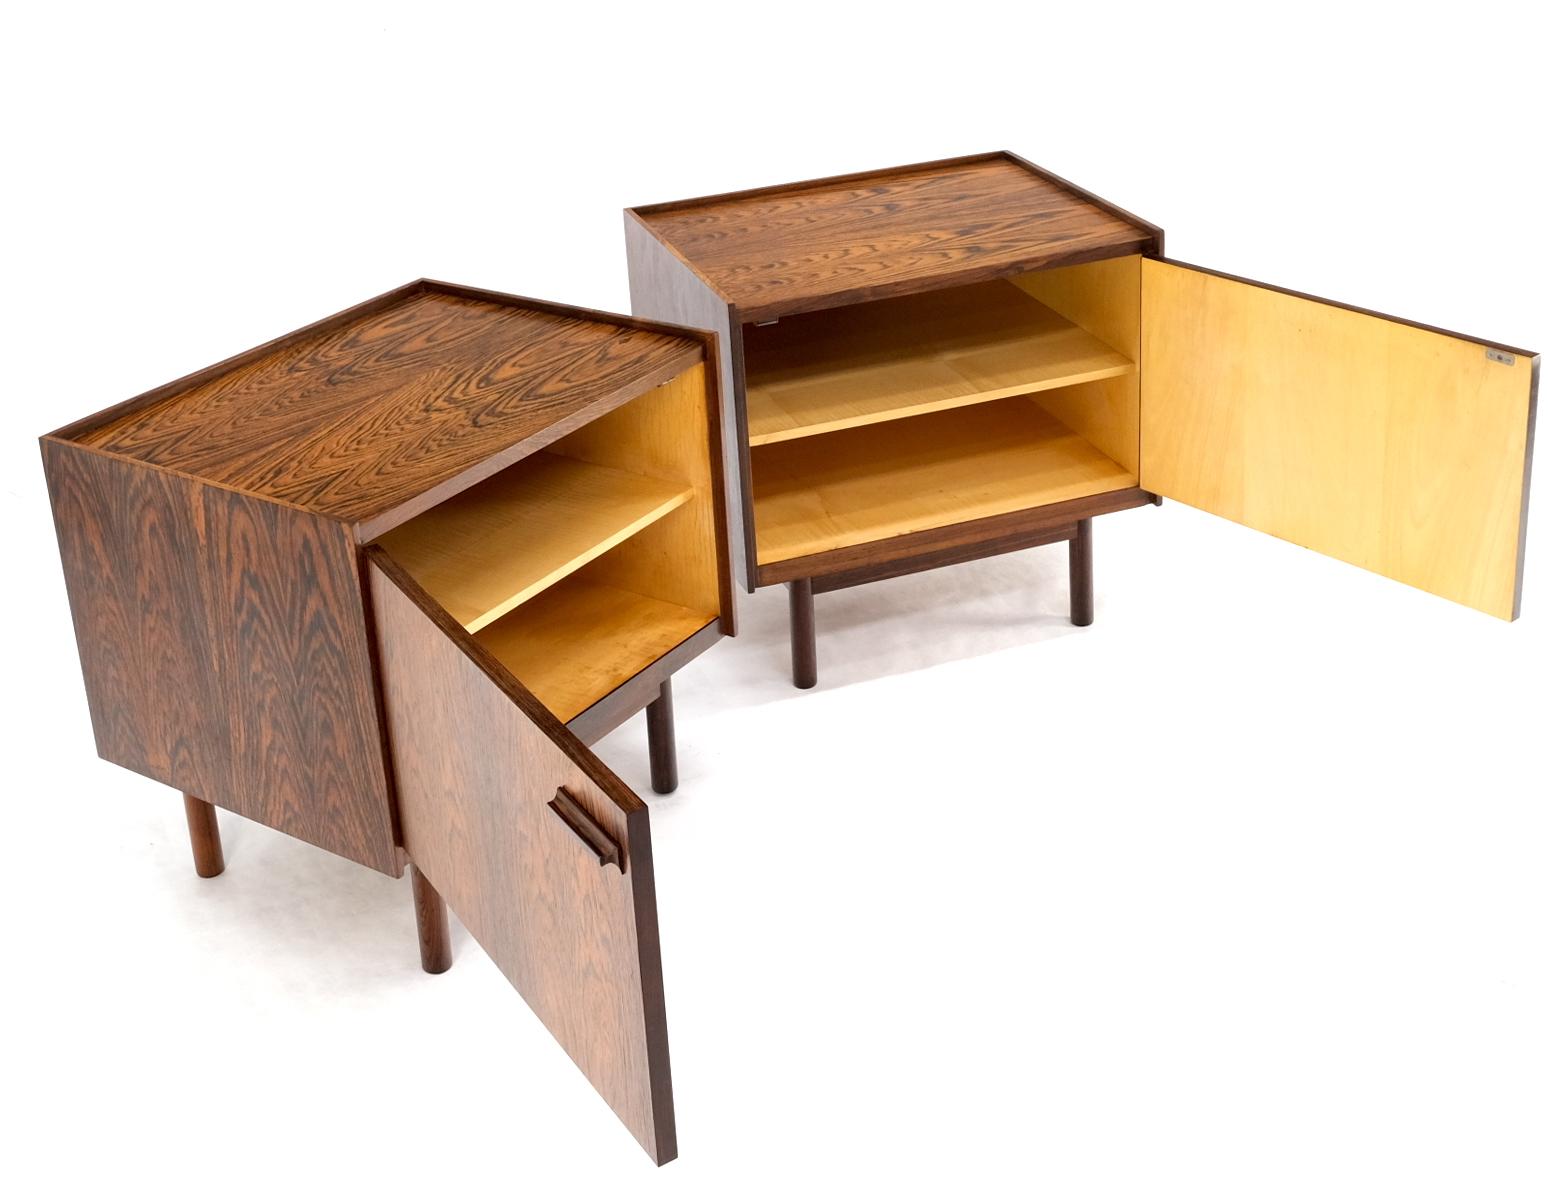 Pair of Gallery Top Danish Mid Century Modern Rosewood End Tables Nightstands Dowel legs.